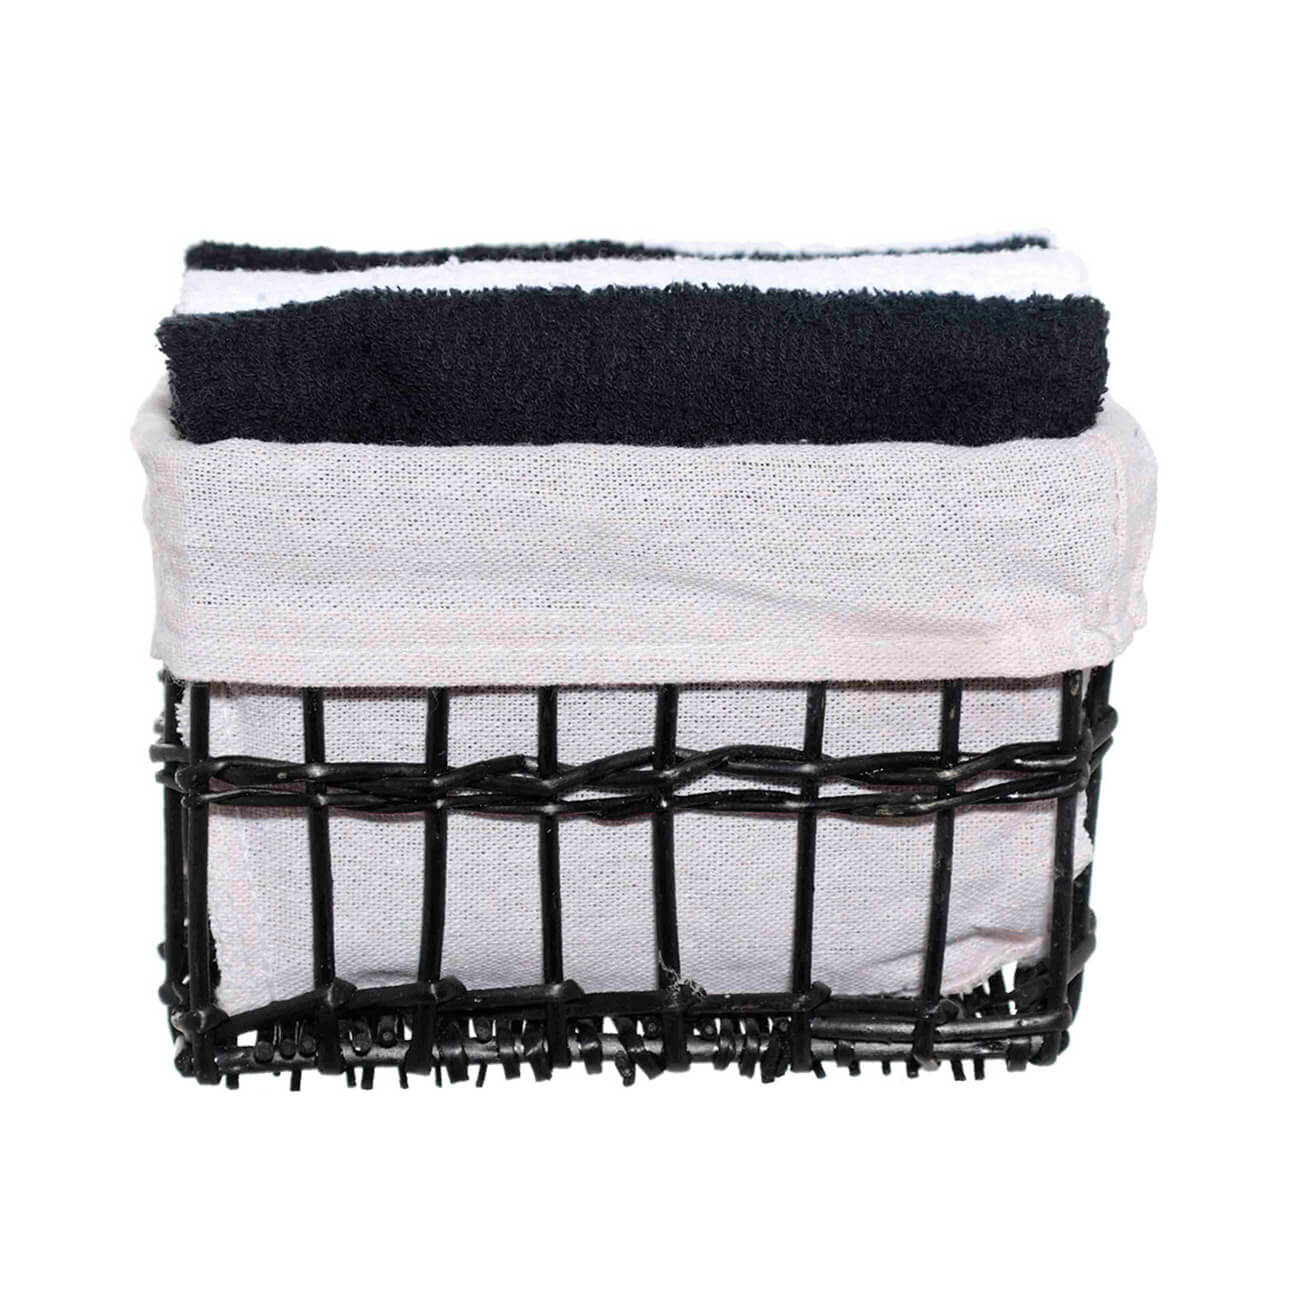 Полотенце, 30х30 см, 4 шт, в корзине, хлопок/лоза, черное/белое, Basket towel полотенце 30х30 см 6 шт в корзине с бантом хлопок бежевое белое basket towel